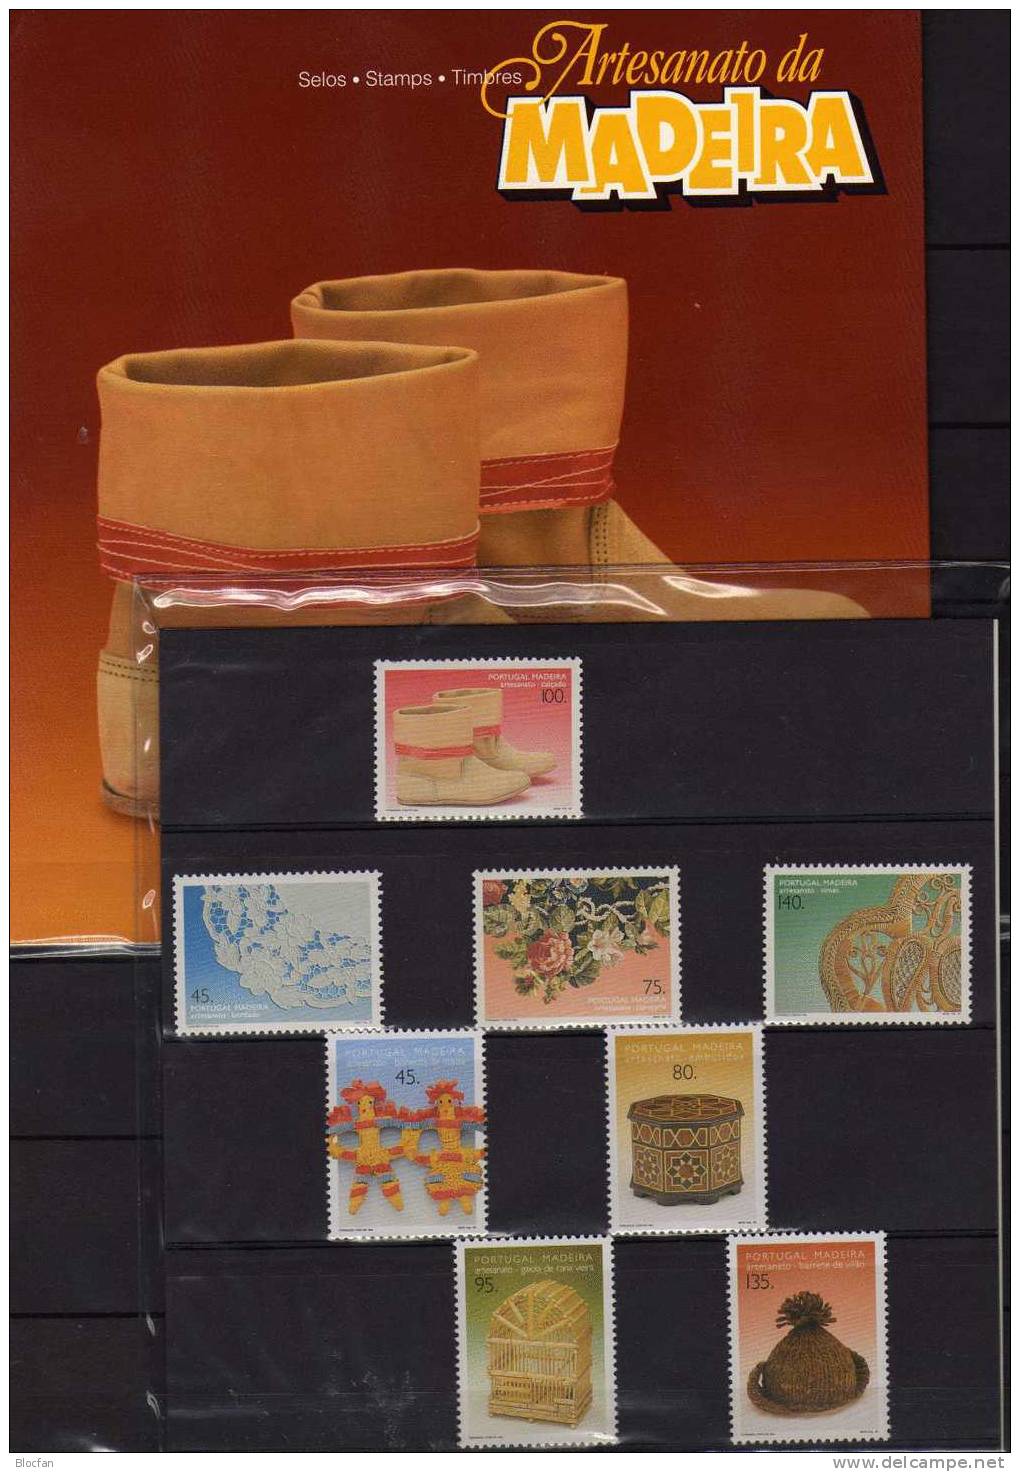 Volkskunst 1995 Auf Portugal Madeira Buch 1/1995 ** 22€ Loch-Stickerei Wand-Teppich Traditionelle Schuhe Korb-Flechterei - Booklets